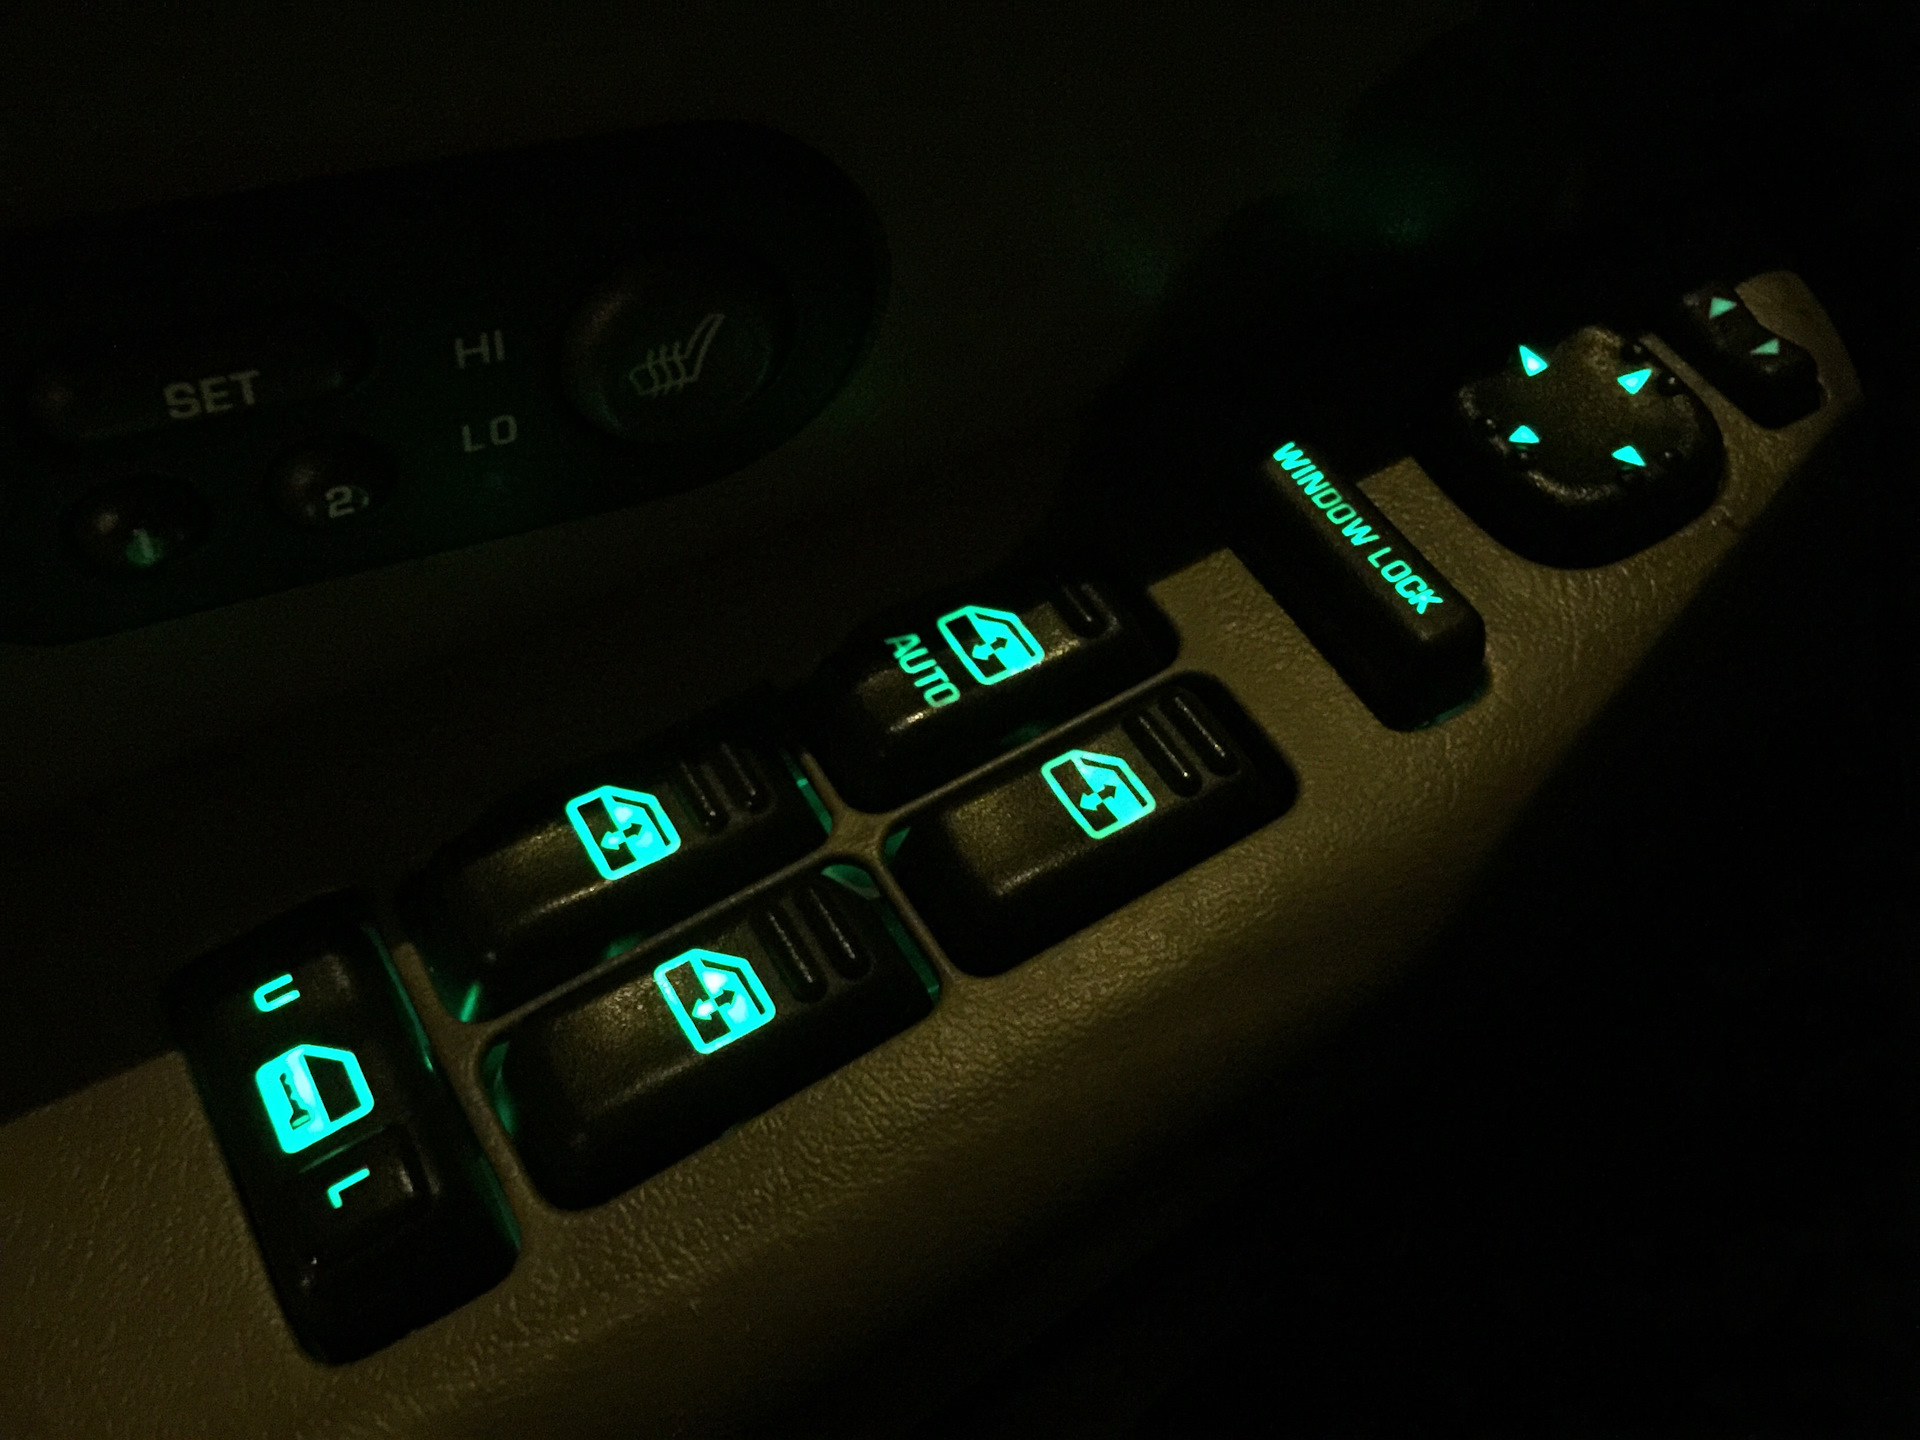 Кнопка подсветкой 22. Chevrolet Tahoe лампочки подсветки кнопок. Подсветка кнопок стеклоподъемников Space Wagon 2. Подсветка кнопок Патриот-01. Шевроле Леганза подсветка кнопок.